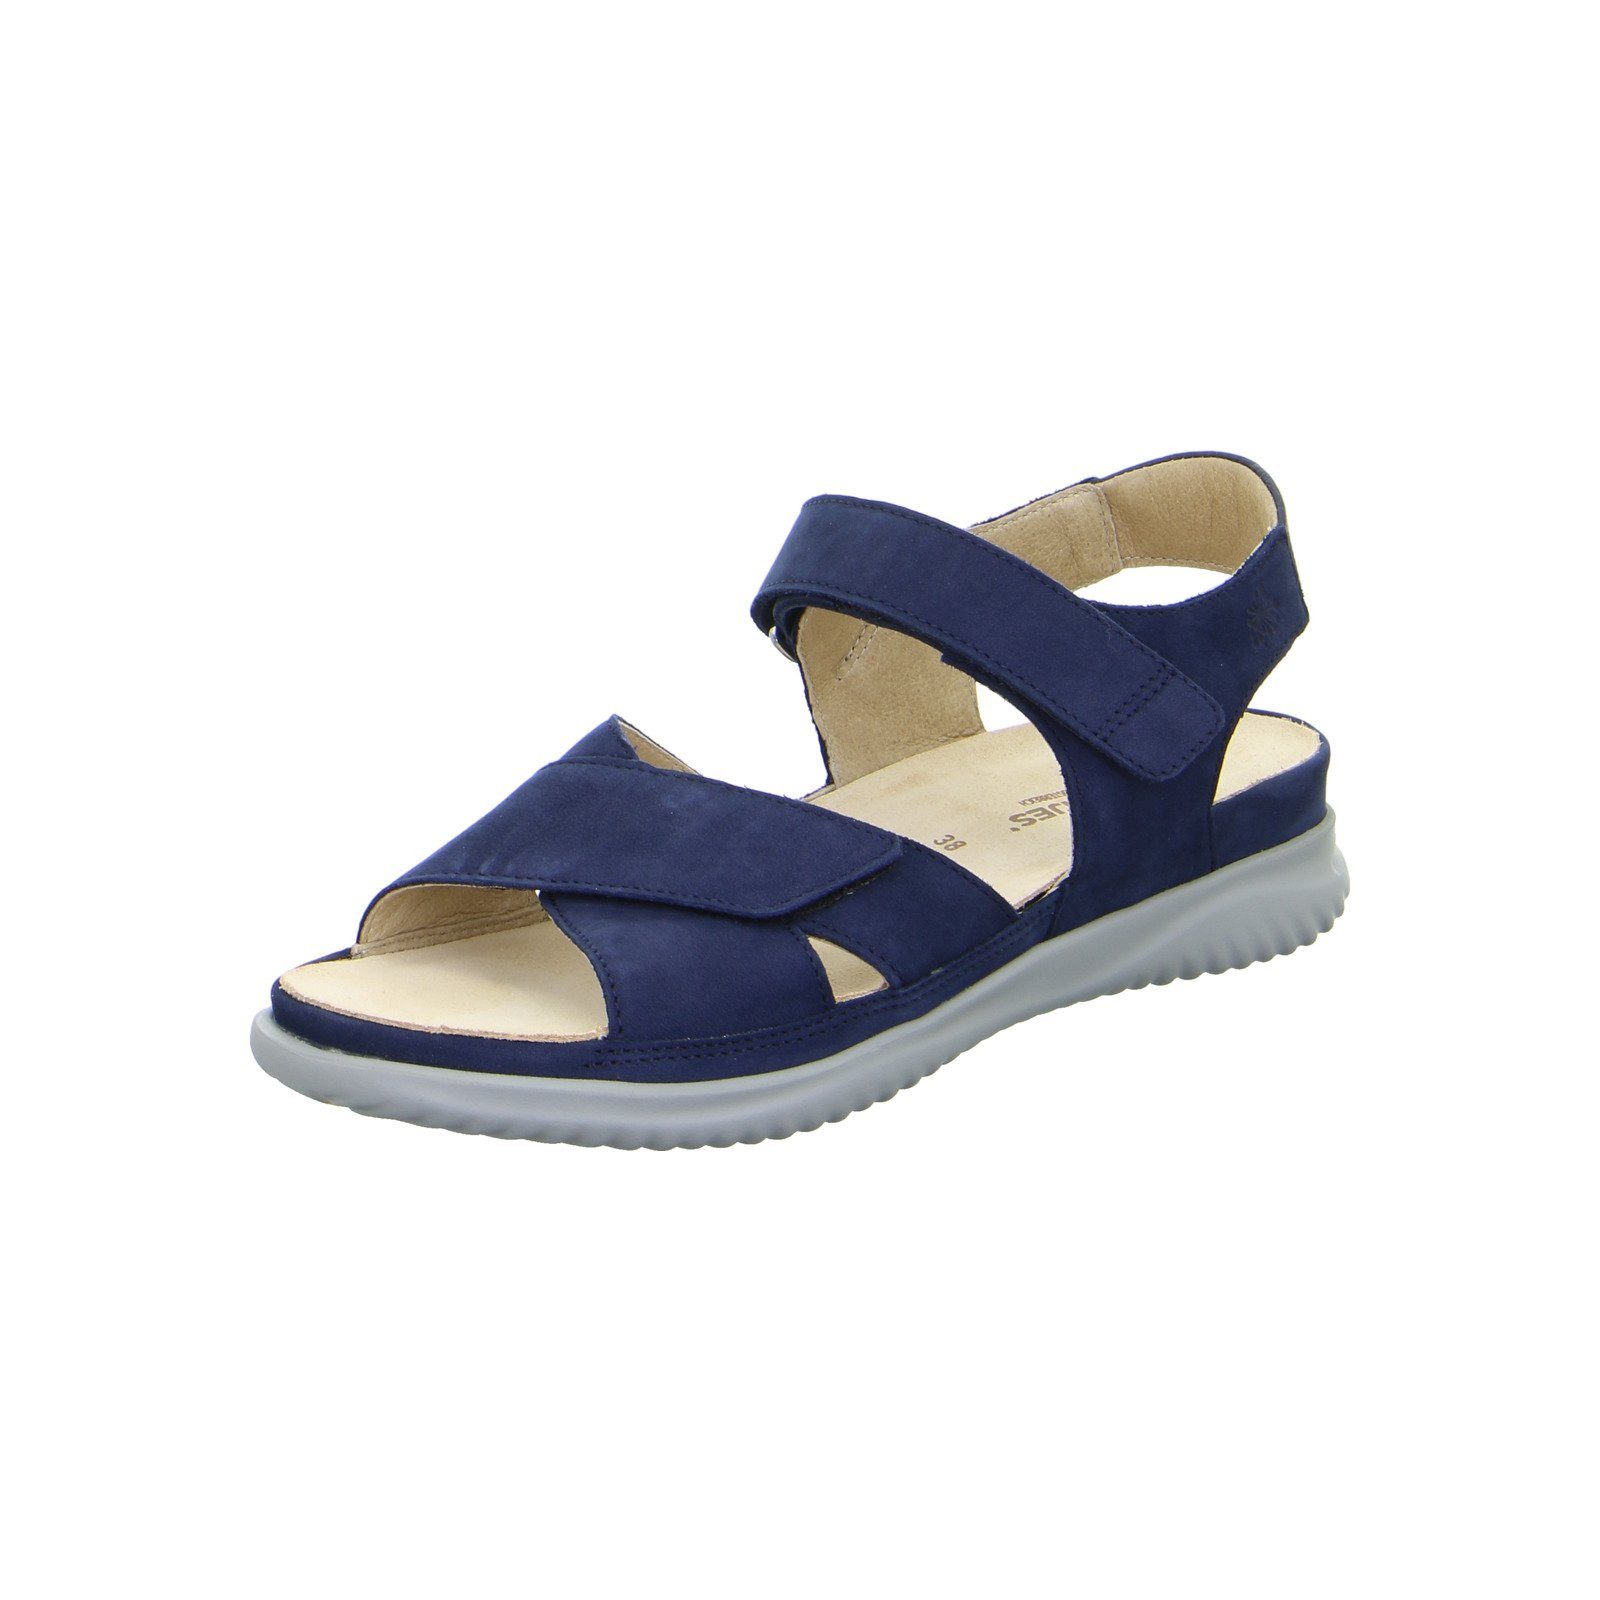 Hartjes Breeze - Damen Schuhe Sandalette Nubuk blau